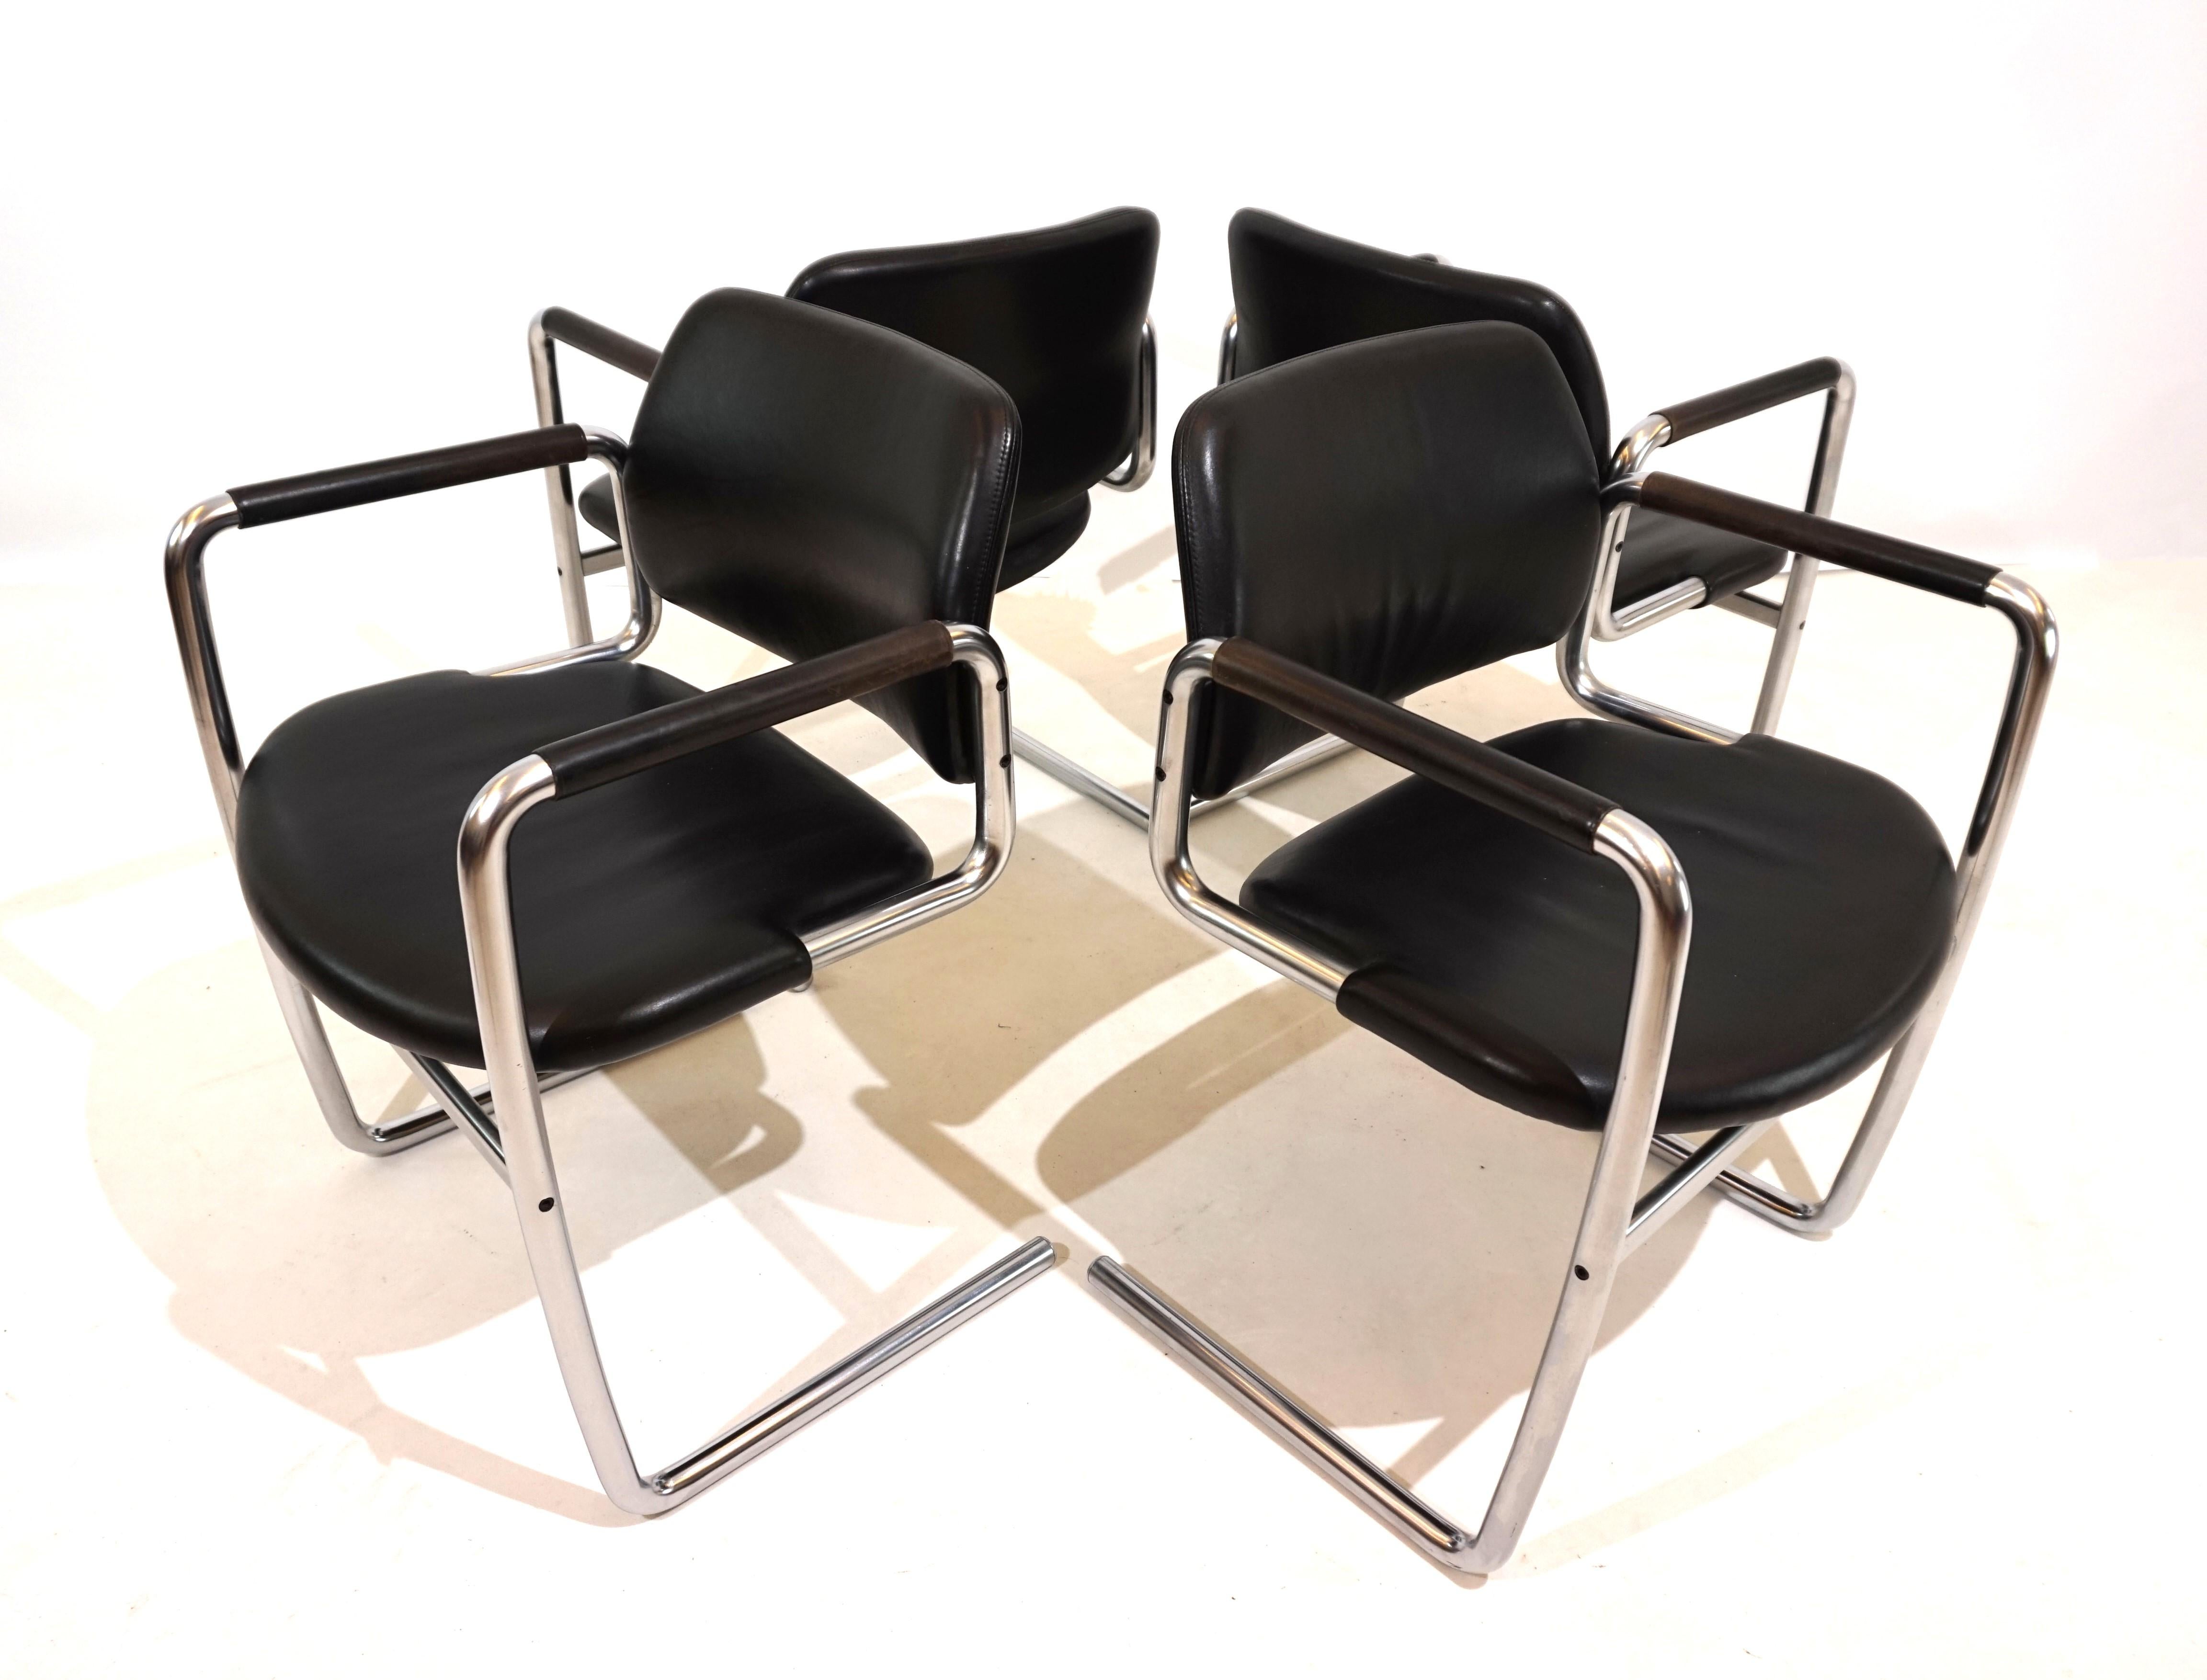 Das Set aus 4 schwarzen Leder-Freischwingern ist im typischen Kastholm-Stil gestaltet. Der solide wirkende gebogene Metallrahmen stützt den Ledersitz nur an den vorderen Enden, was dem Stuhl eine gewisse Leichtigkeit verleiht. Die schwarzen